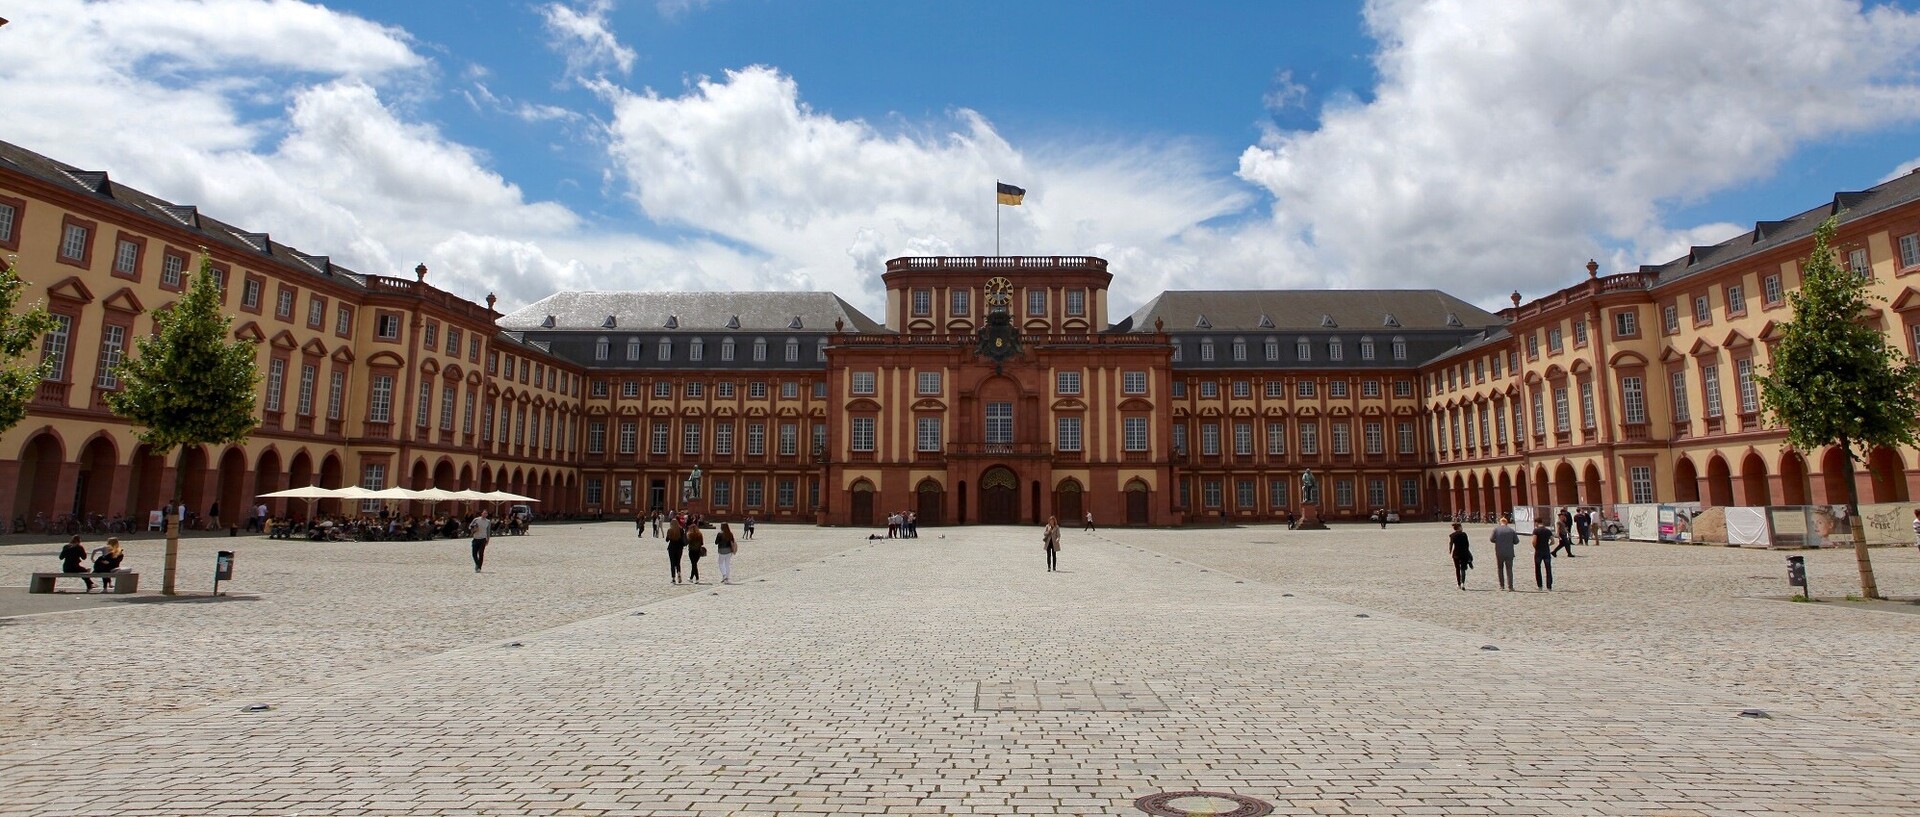 Die Universität Manheim ist einem Barockschloss. Auf dem Bild sehen Sie den Ehrenhof des Schlosses.